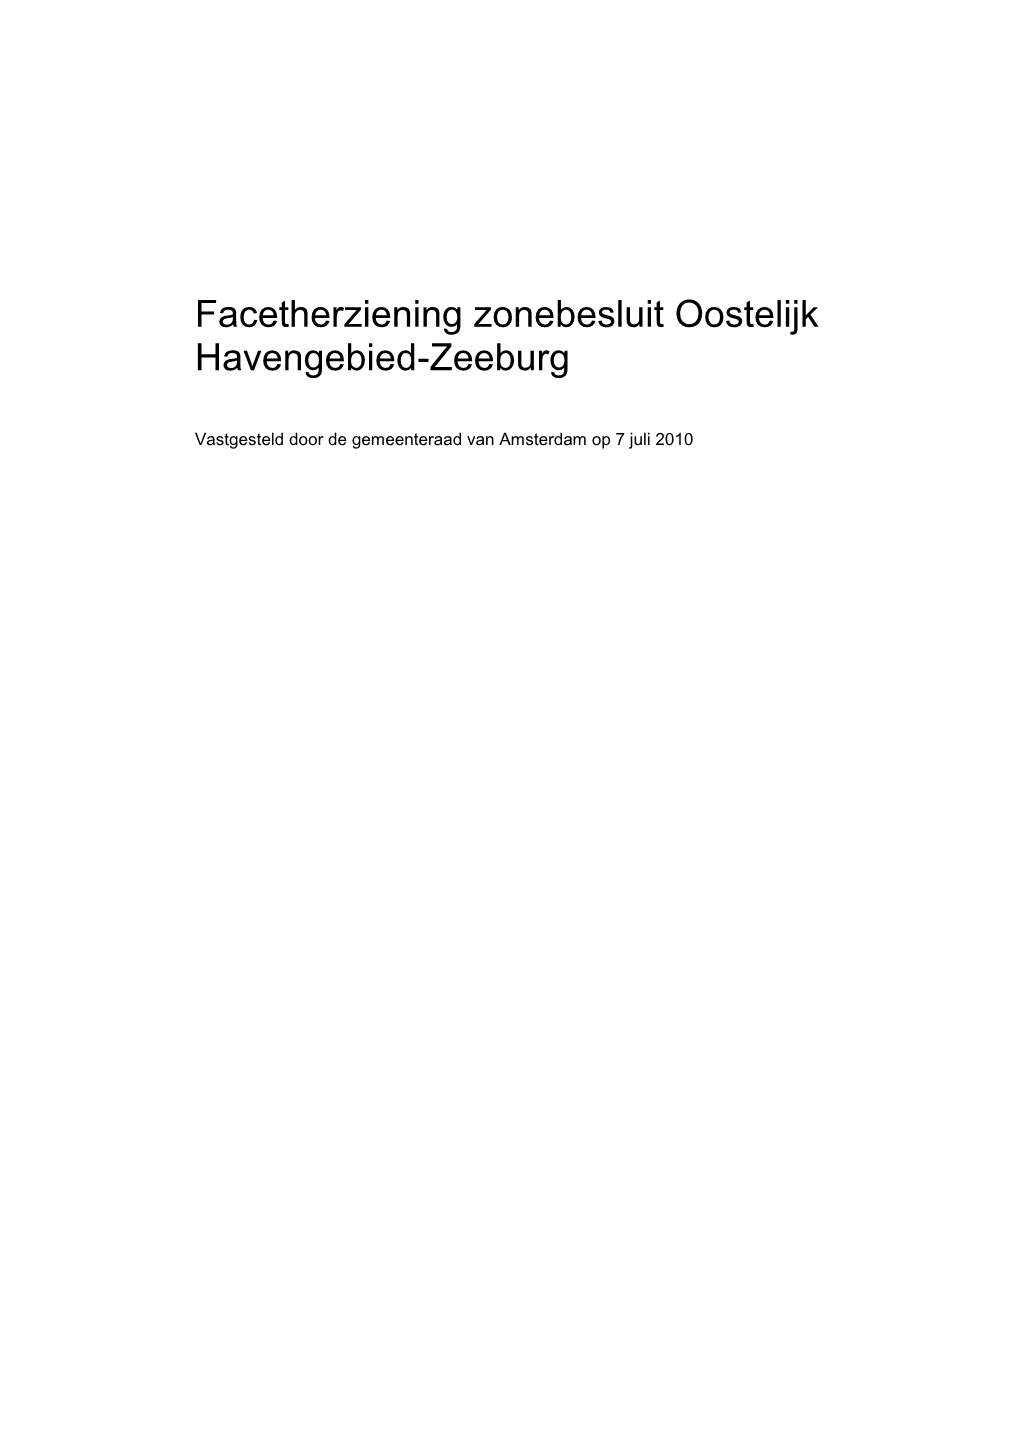 Facetherziening Zonebesluit Oostelijk Havengebied-Zeeburg